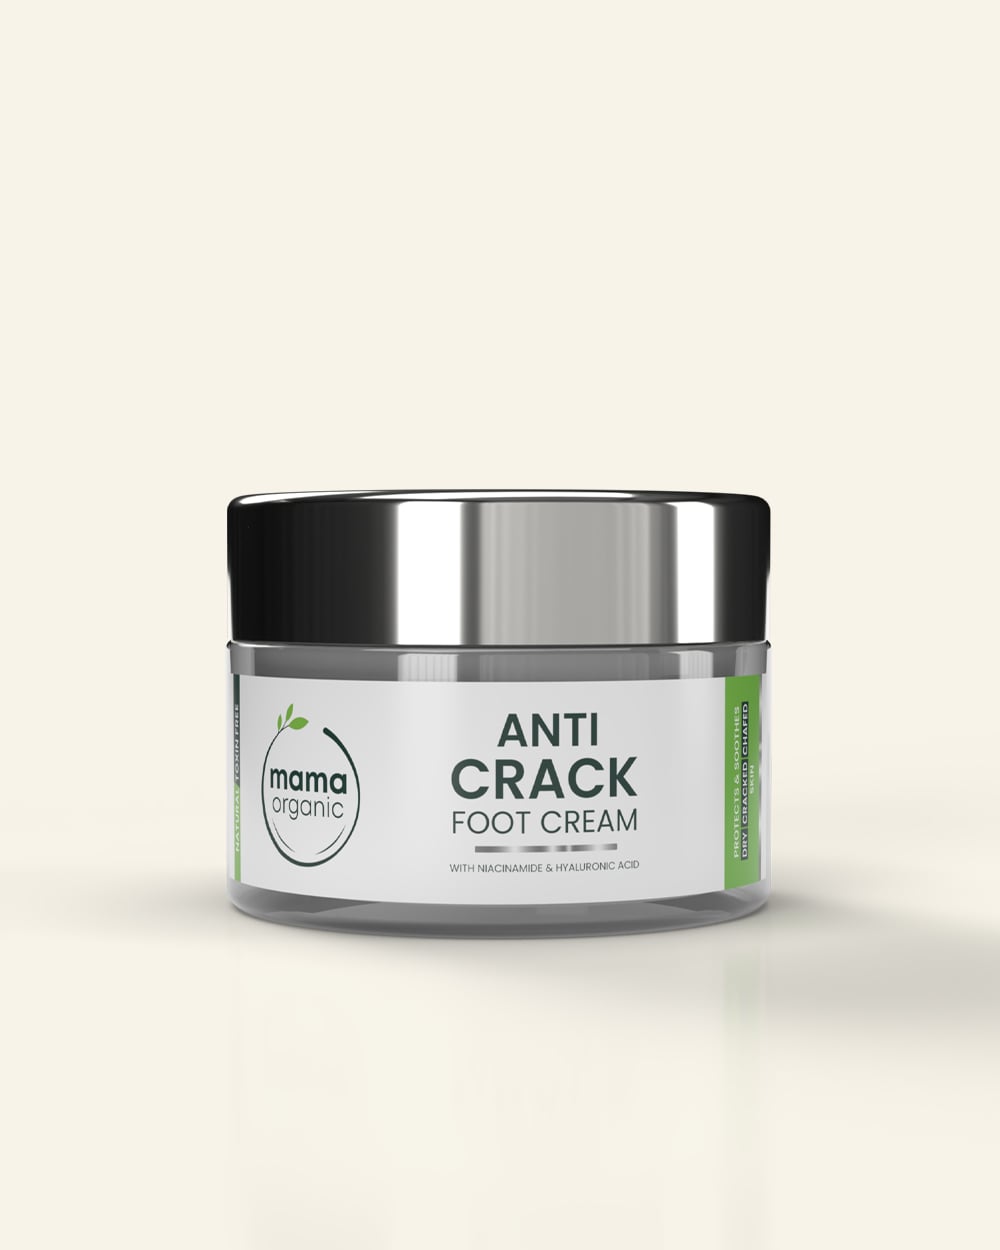 Anti Crack Foot Cream